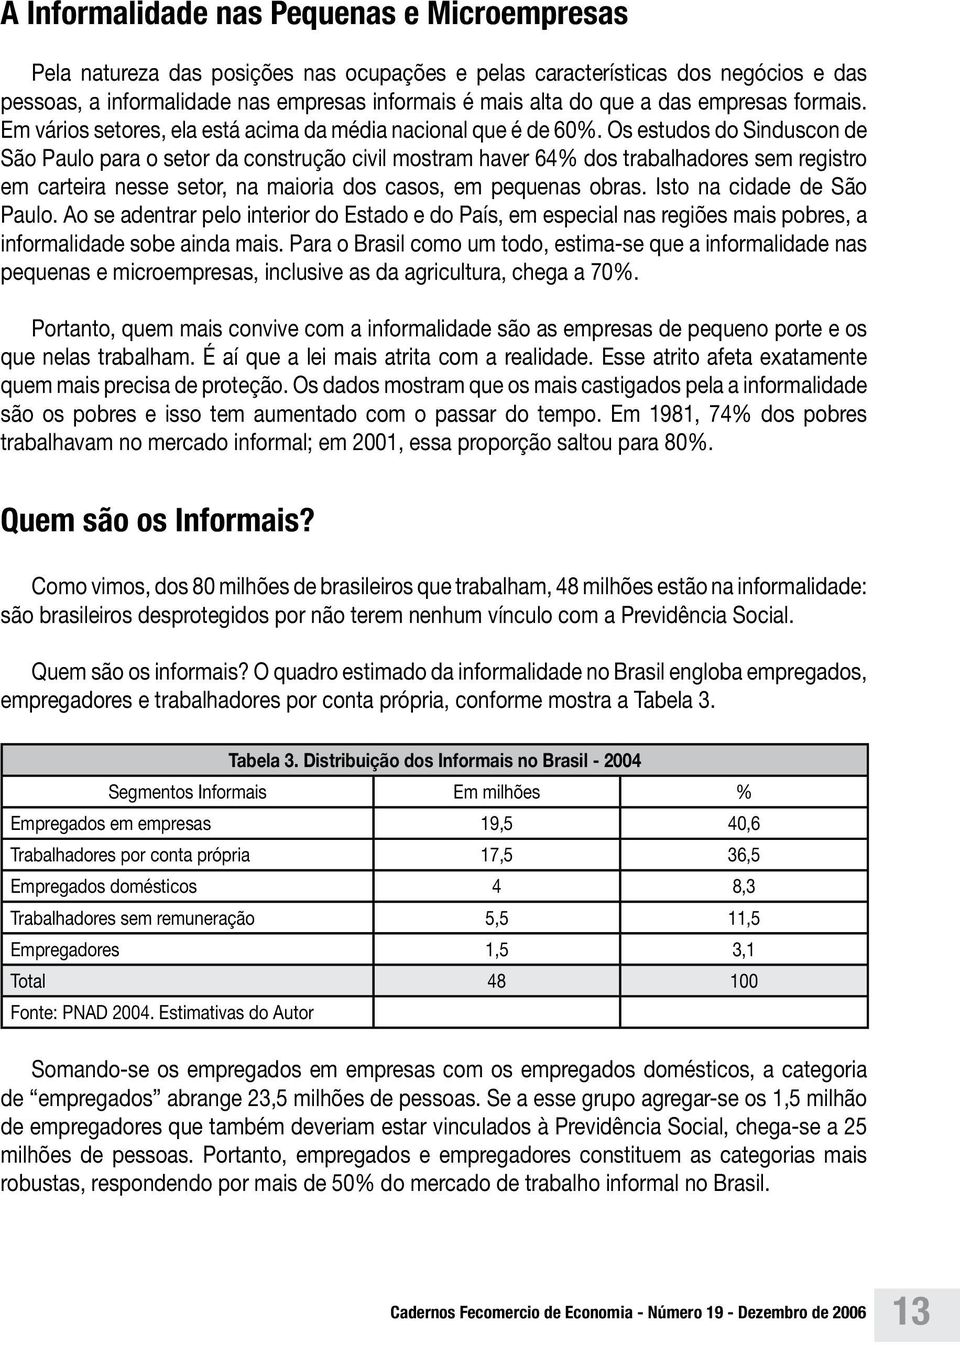 Os estudos do Sinduscon de São Paulo para o setor da construção civil mostram haver 64% dos trabalhadores sem registro em carteira nesse setor, na maioria dos casos, em pequenas obras.